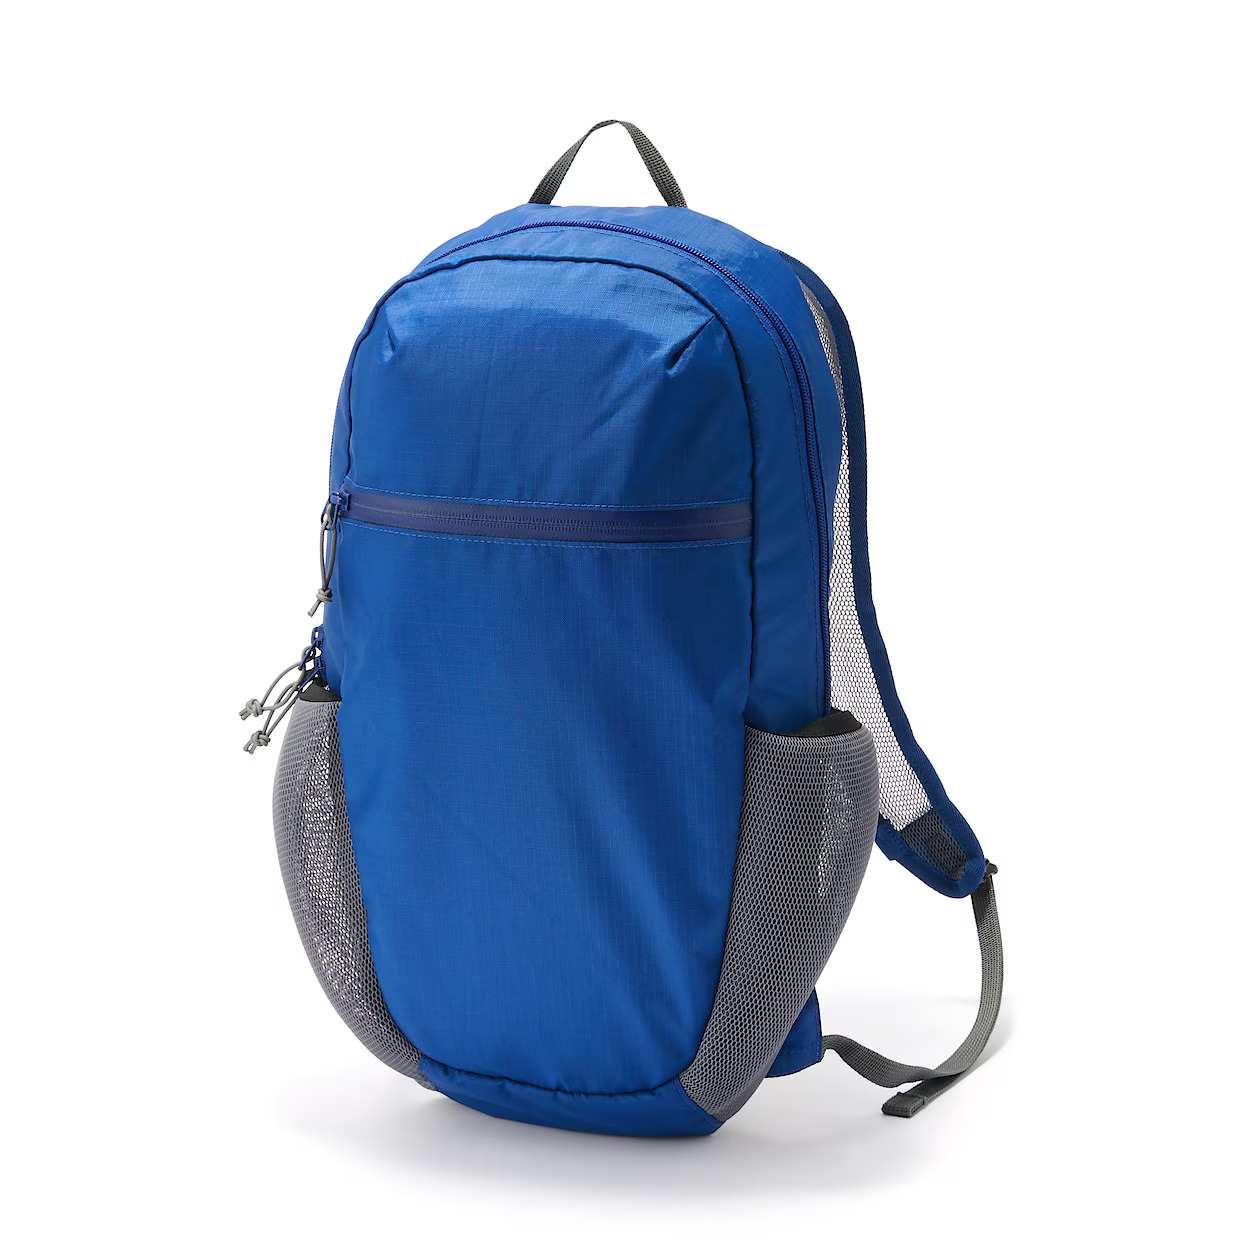 MUJI 13 L Water Resistant Mesh Backpack Blue Unisex FedEx